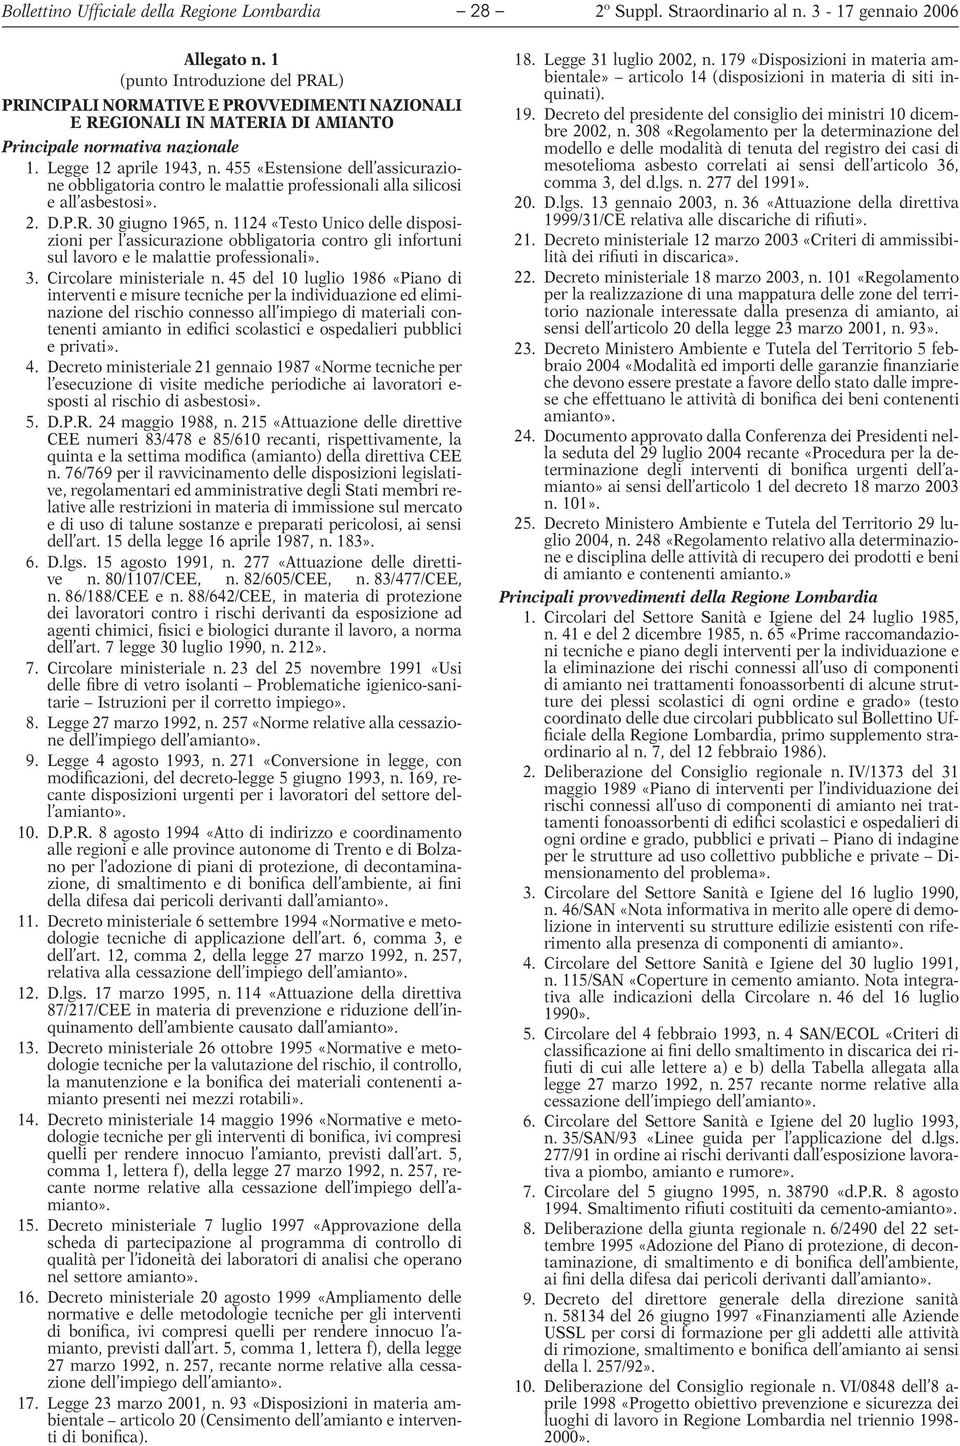 455 «Estensione dell assicurazione obbligatoria contro le malattie professionali alla silicosi e all asbestosi». 2. D.P.R. 30 giugno 1965, n.